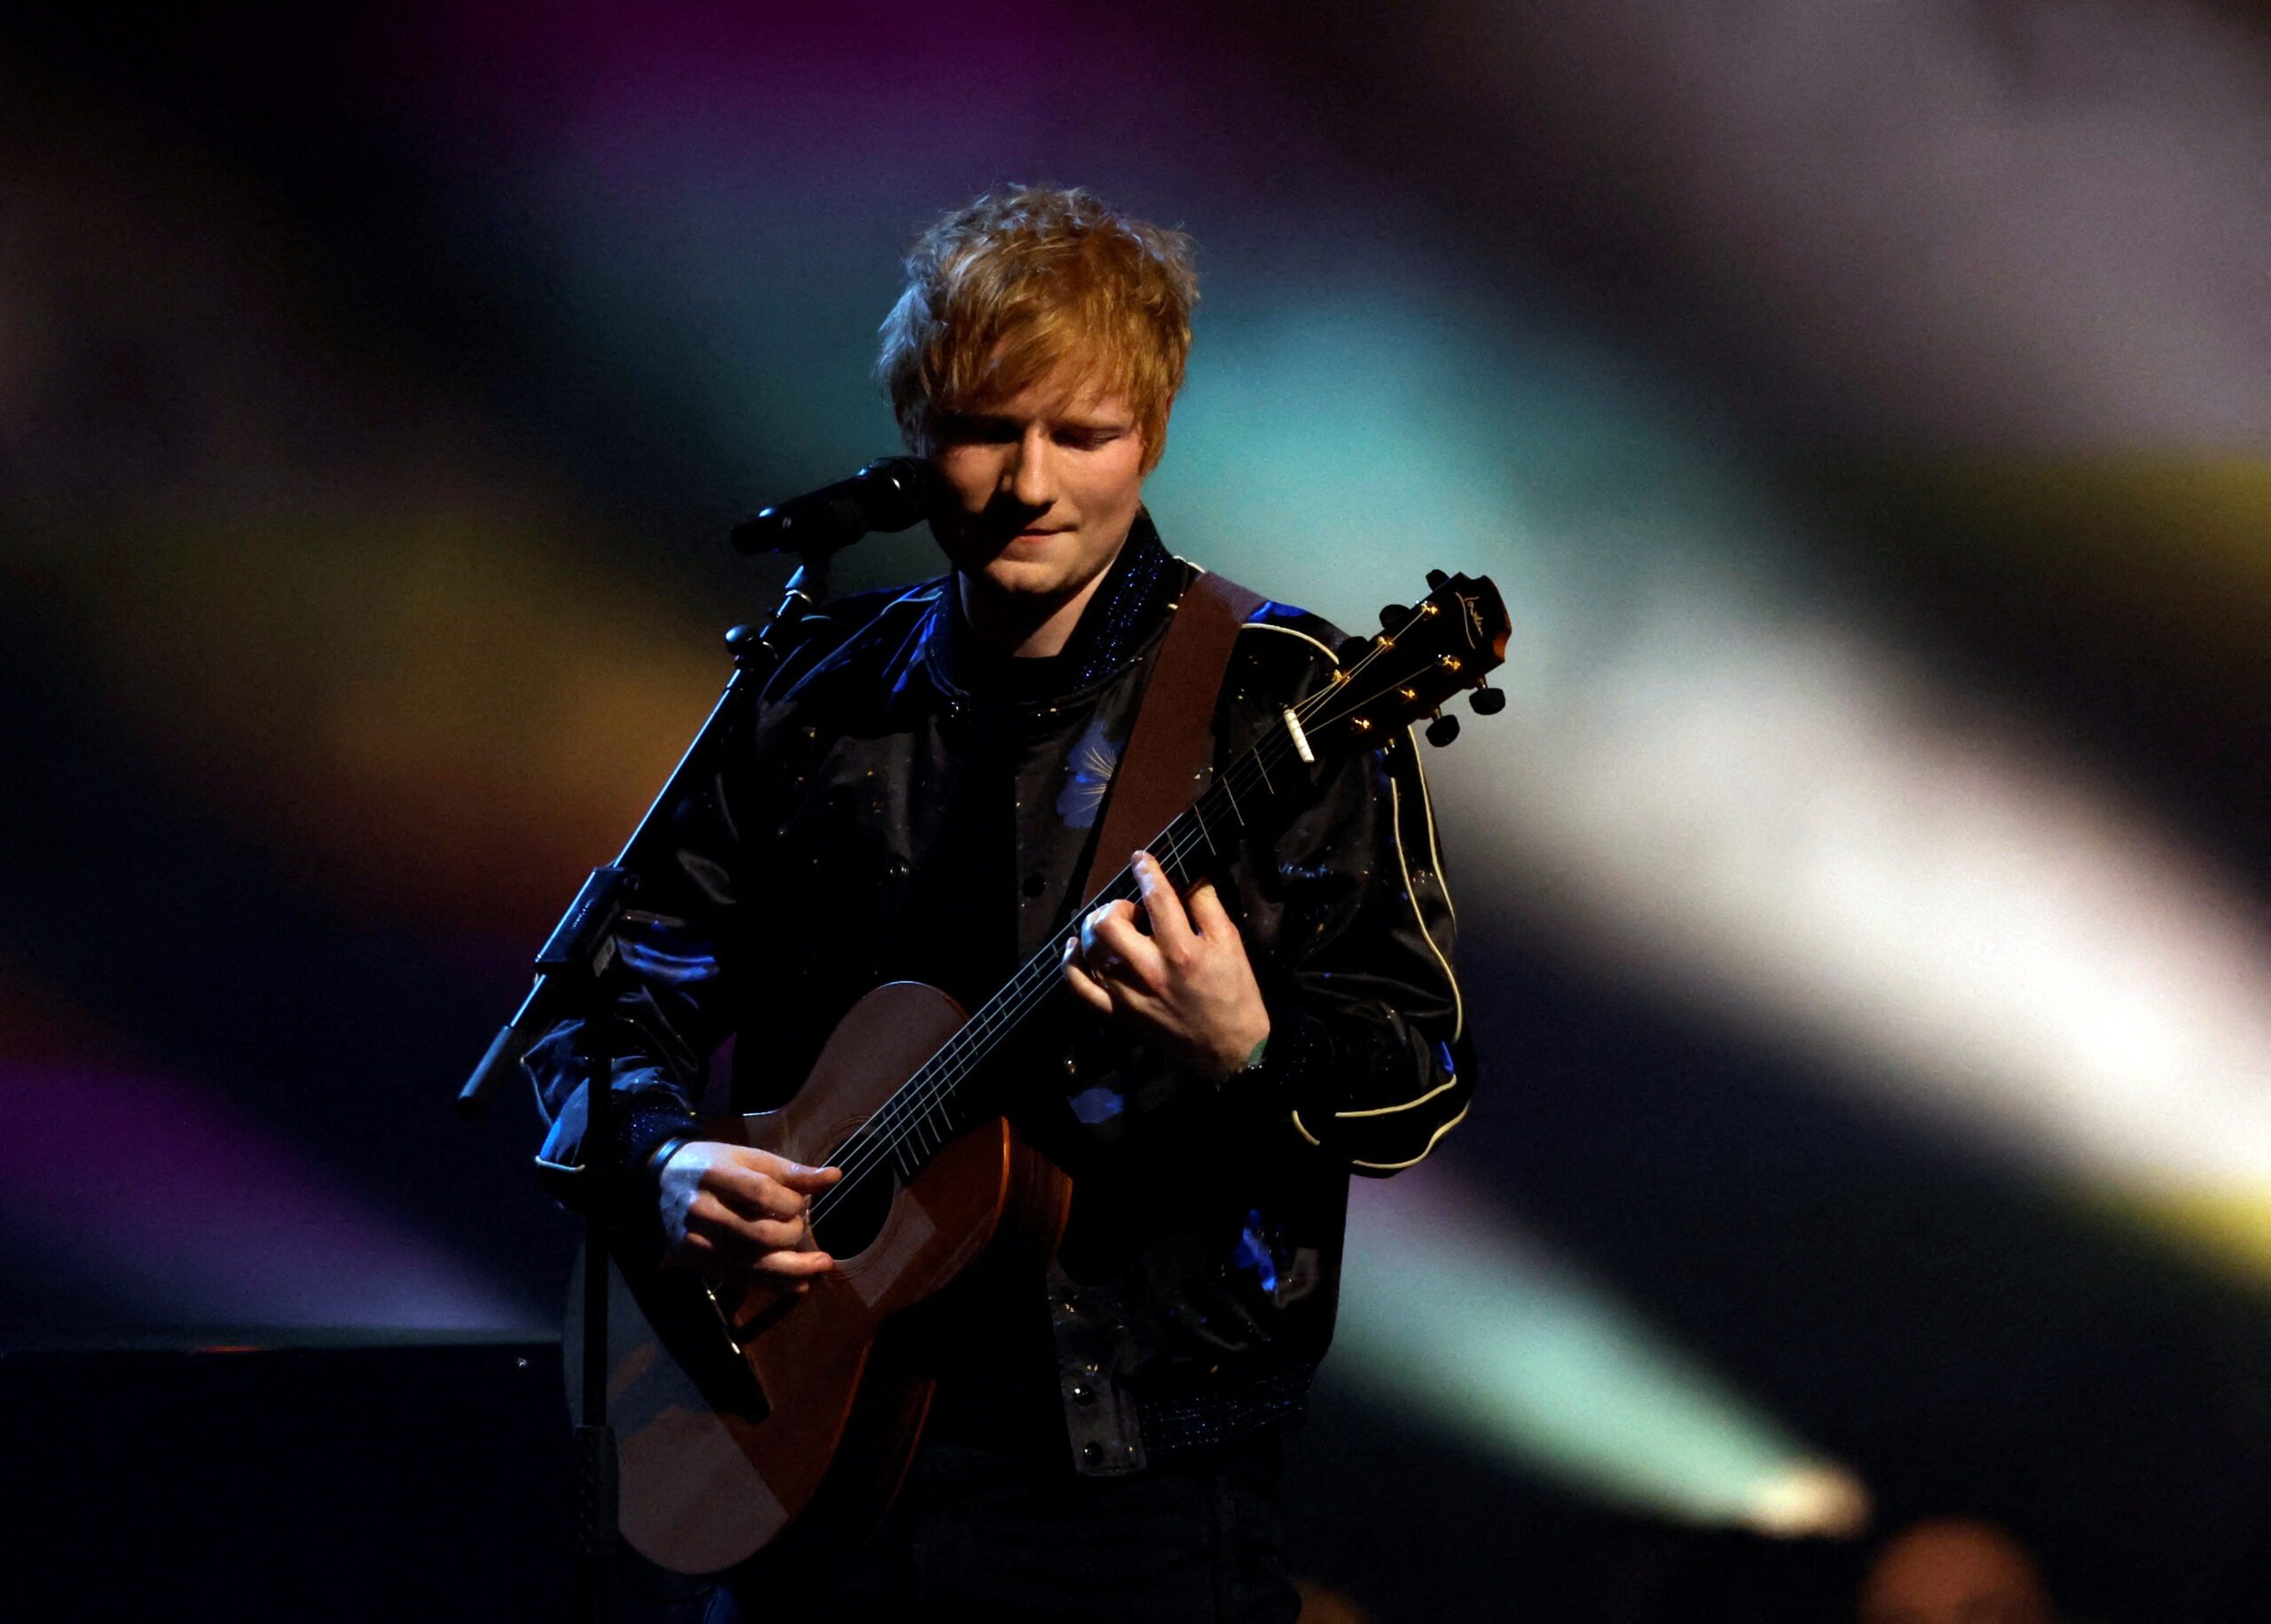 Ed Sheeran, Camila Cabello perform at fundraising concert for Ukraine